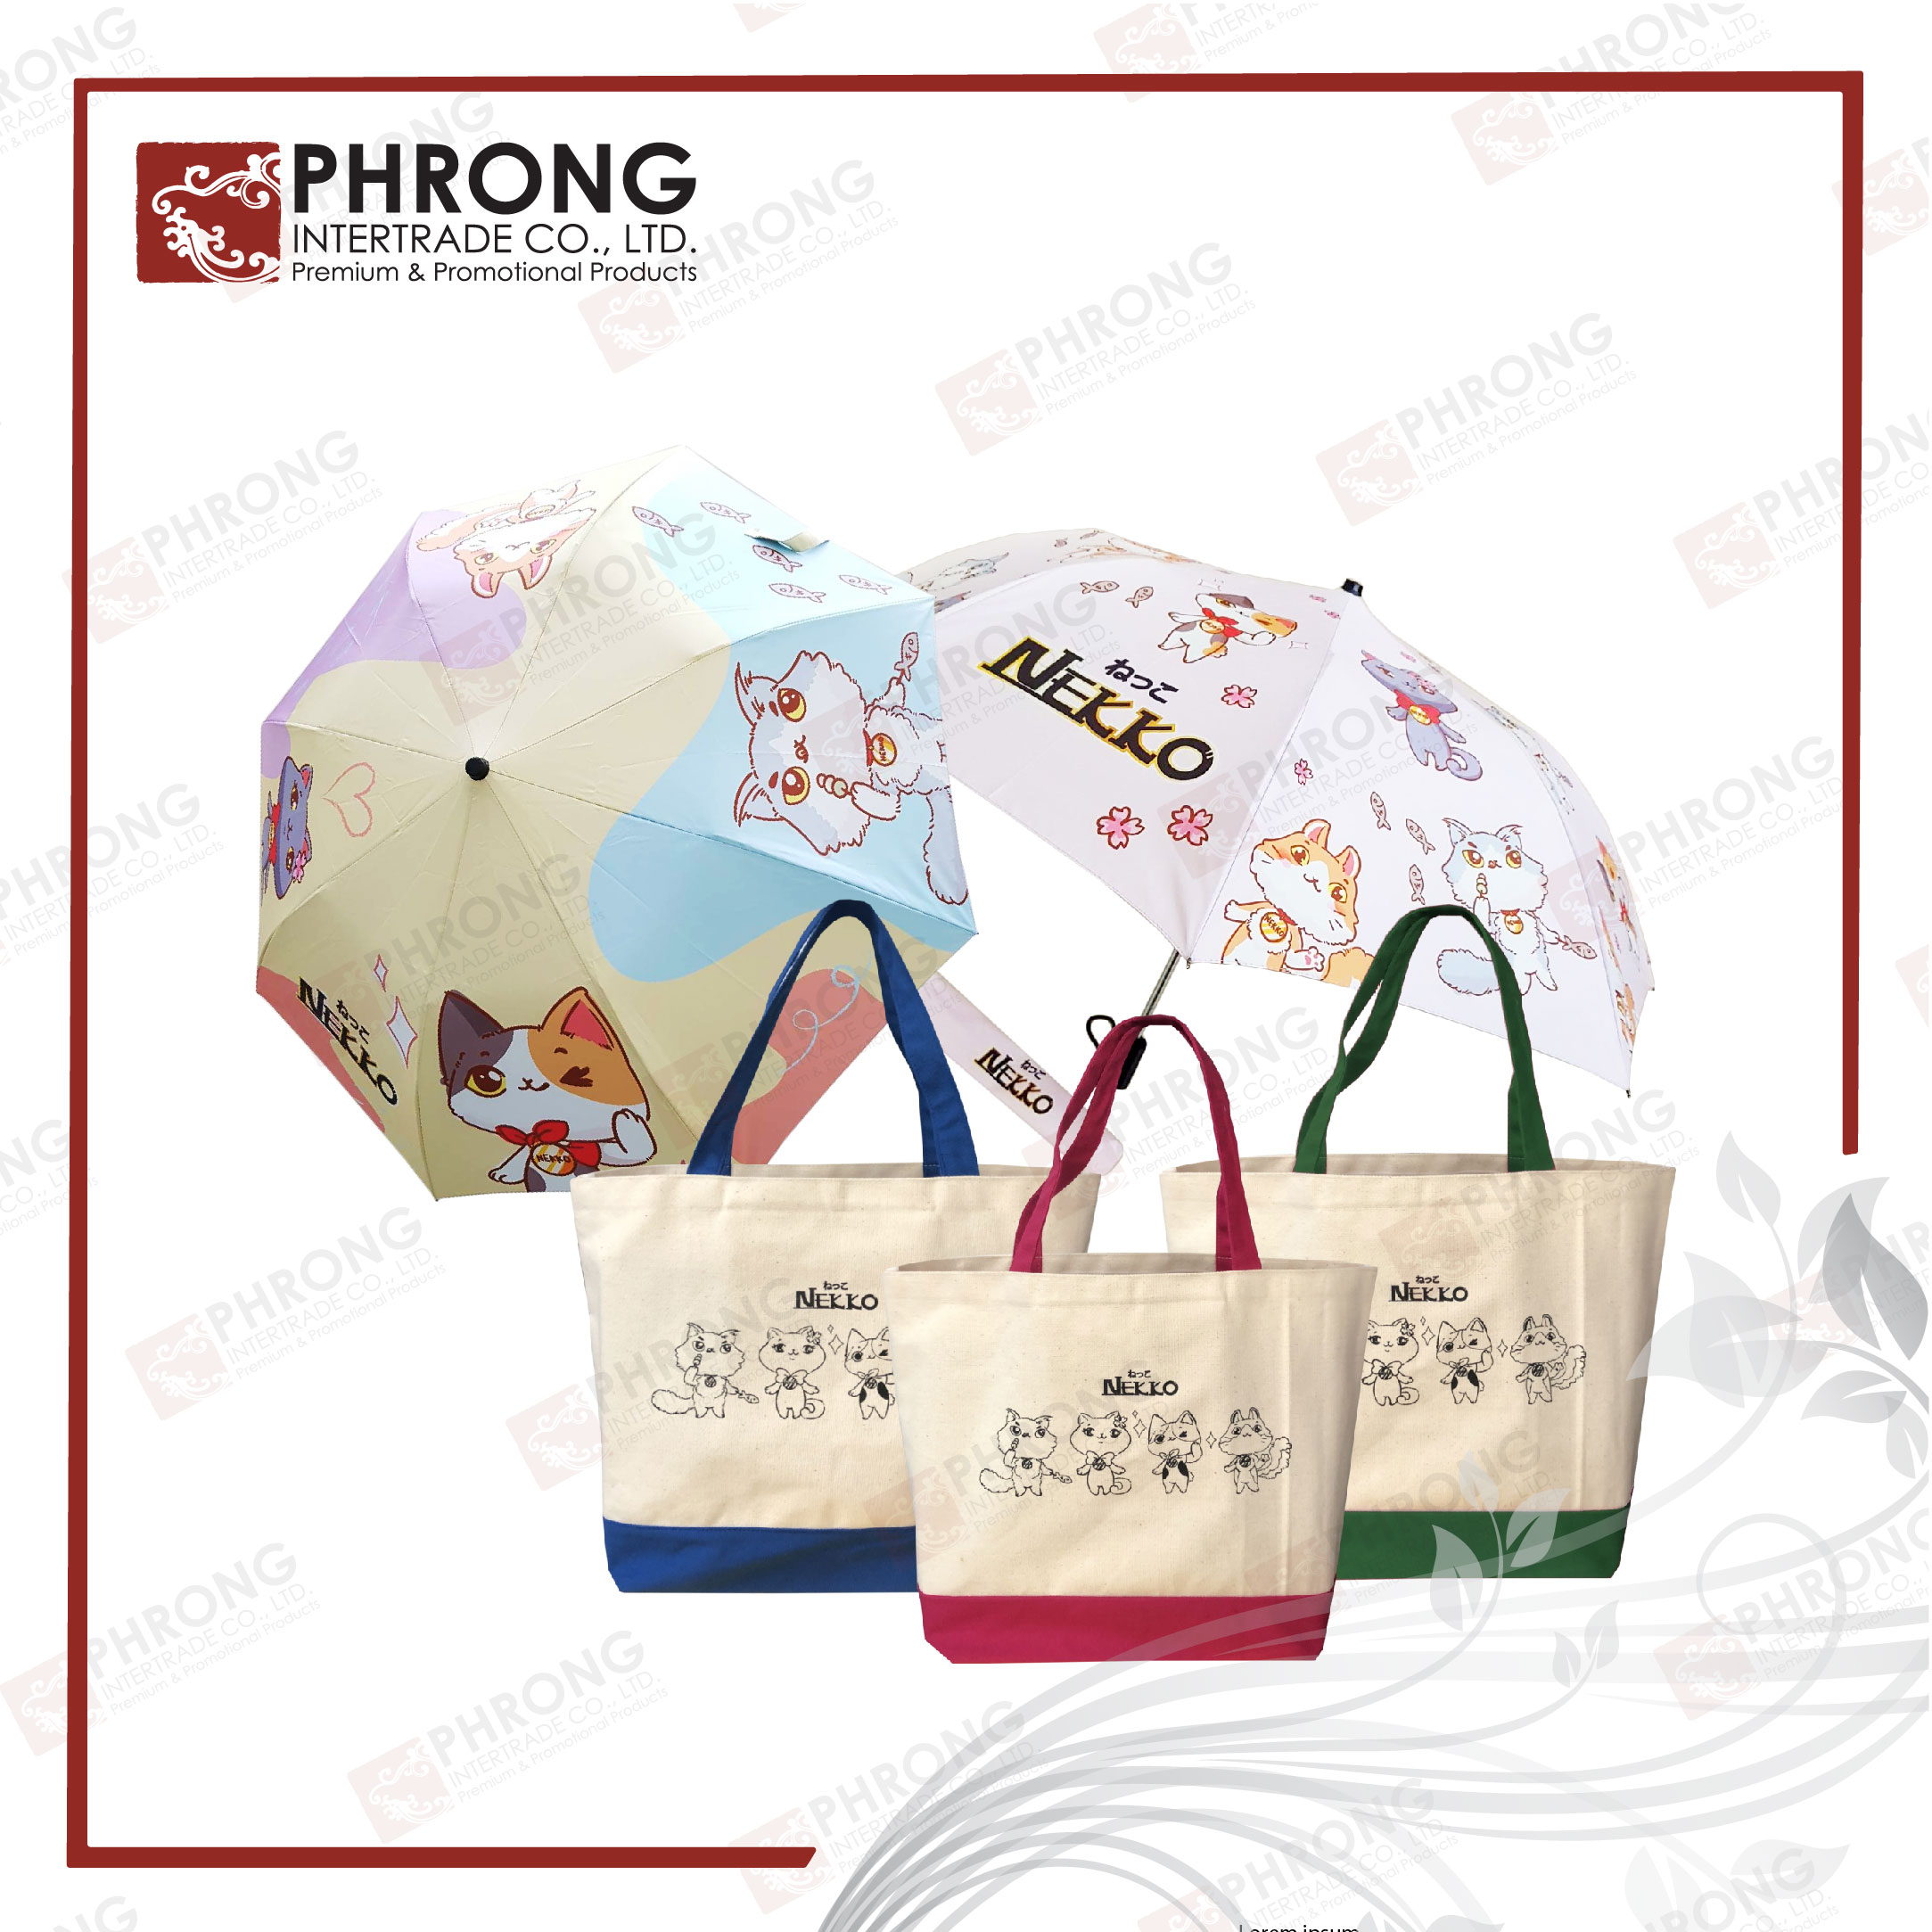 ของพรีเมี่ยมeco #Phrong #PhrongIntertrade #ของพรีเมี่ยมรักษ์โลก #งานสั่งทำ งานสั่งผลิด สั่งผลิของพรีเมี่ยม #ผลิตของแจก #ของแจกเก๋ # พรีเมี่ยม #promotionalproducts #promotionalmerchandise #ของพรีเมี่ยม #สินค้าของลูกค้า #ส่งเสริมการขาย #สินค้าพรีเมี่ยมของที่ #สินค้าส่งเสริมการขาย #ของช่วยยอดขายสินค้า #ของฝากของแท้ #ของฝาก #สินค้าแจกพนักงาน #ของขวัญปีใหม่ #ของพรีเบียมเก๋ ของพรีพรีเมี่ยมดี #พรีใบเมียมกิ๊ฟ #greenproduct #ecoproduct #ecogift #gogreen #greengift #greenpromo #Nekko